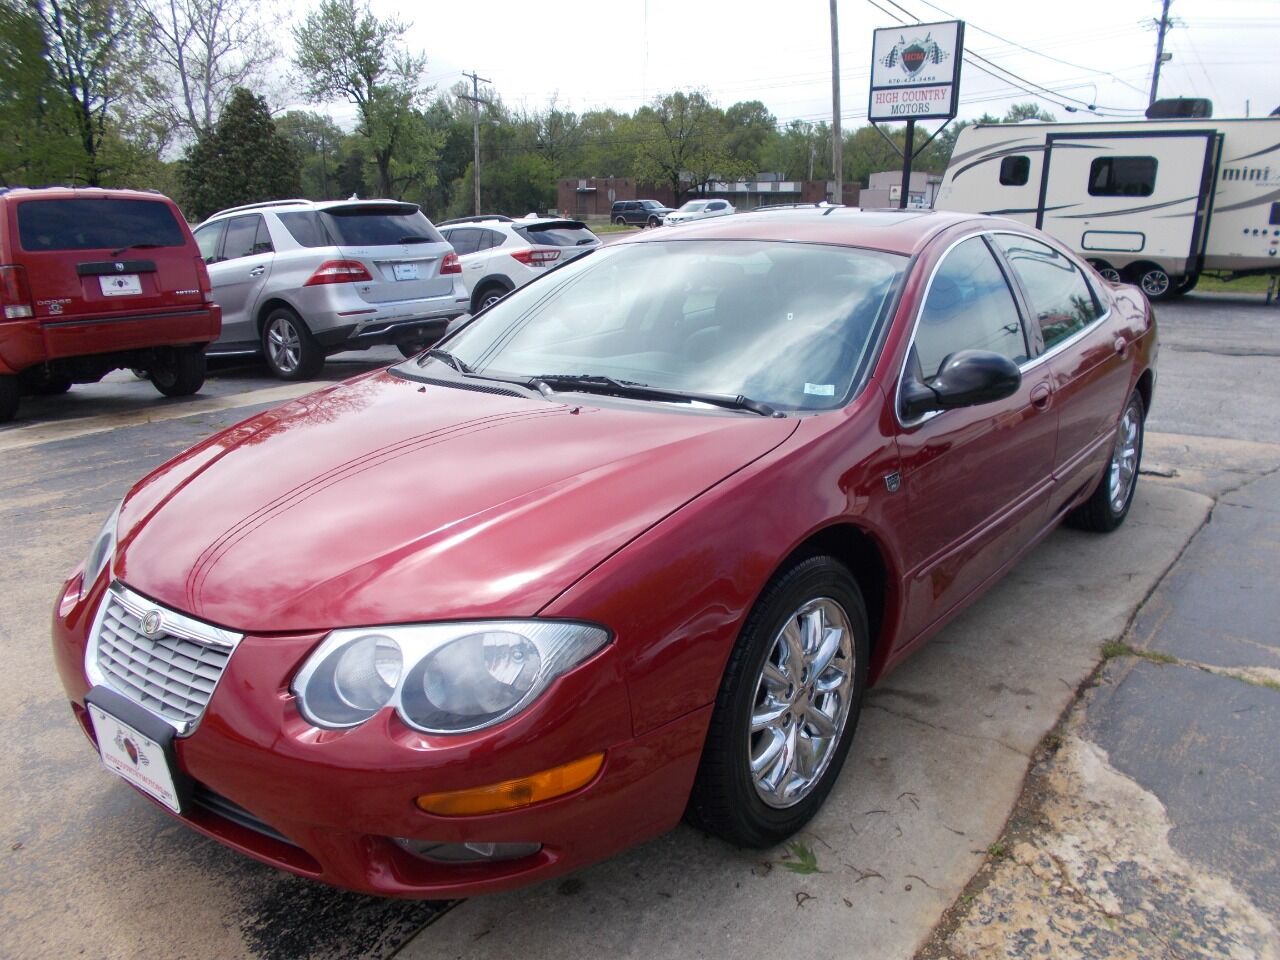 2004 Chrysler 300 For Sale - Carsforsale.com®